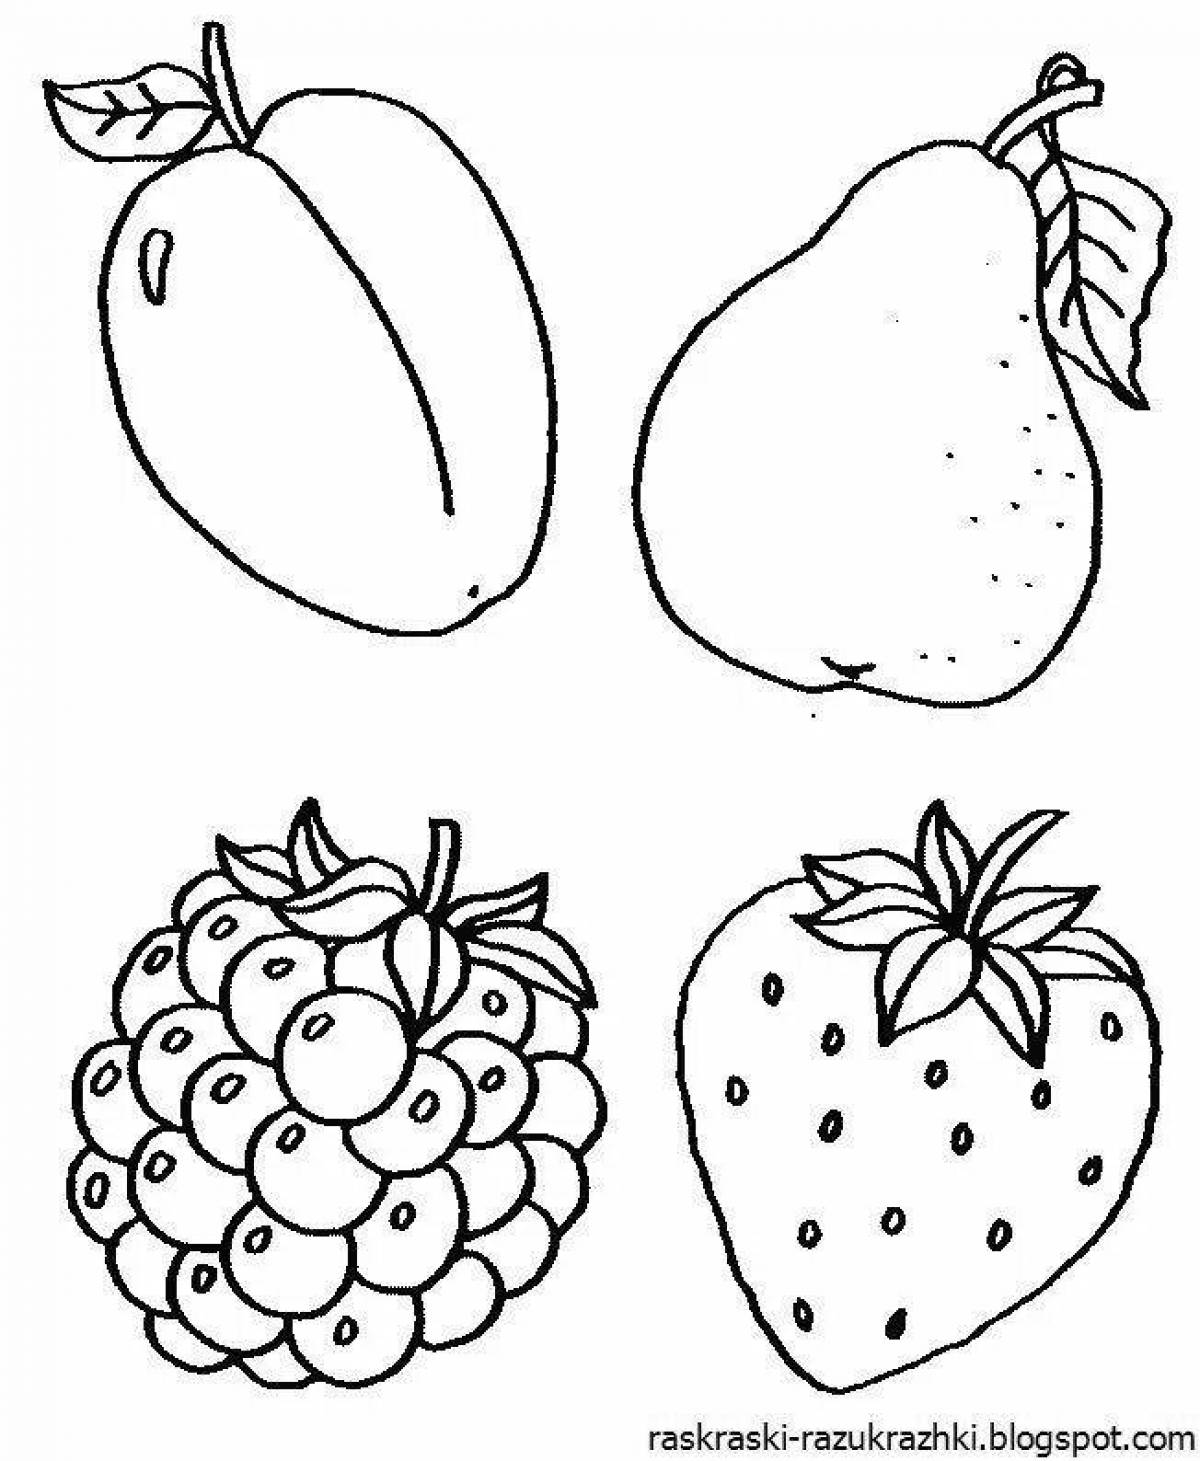 Красочные раскраски с фруктами для детей 2-3 лет